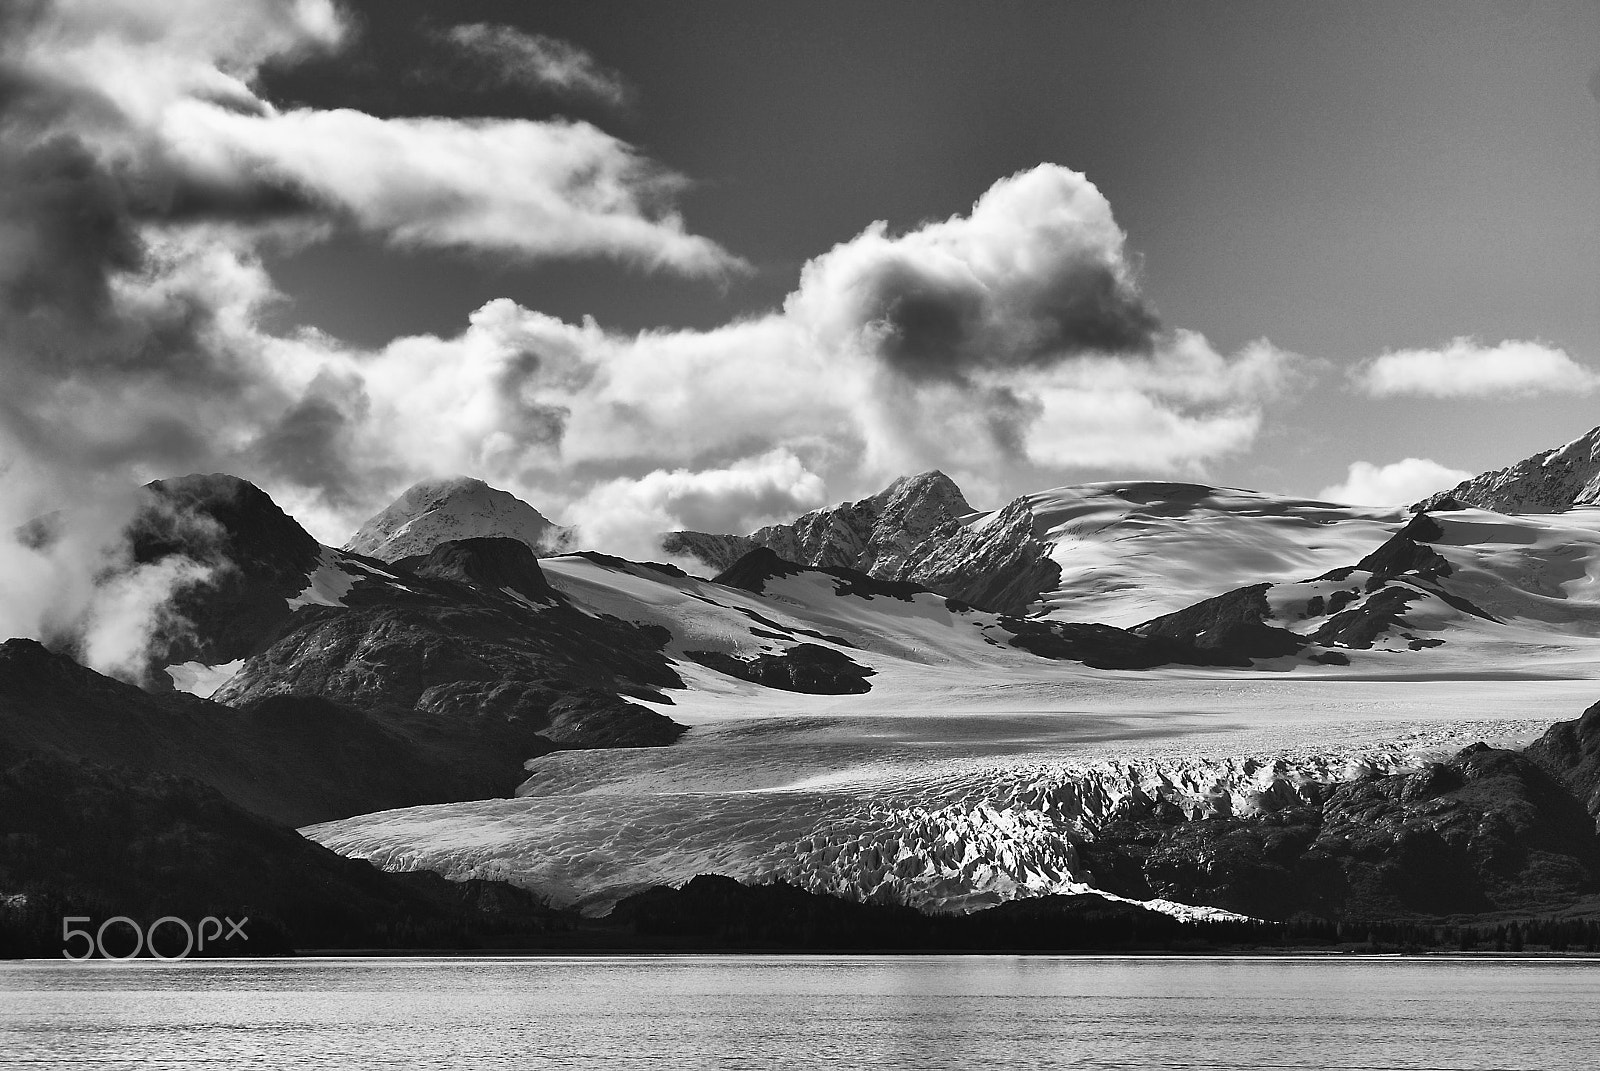 Nikon D80 + AF Zoom-Nikkor 80-200mm f/2.8 ED sample photo. Alaskan summer photography